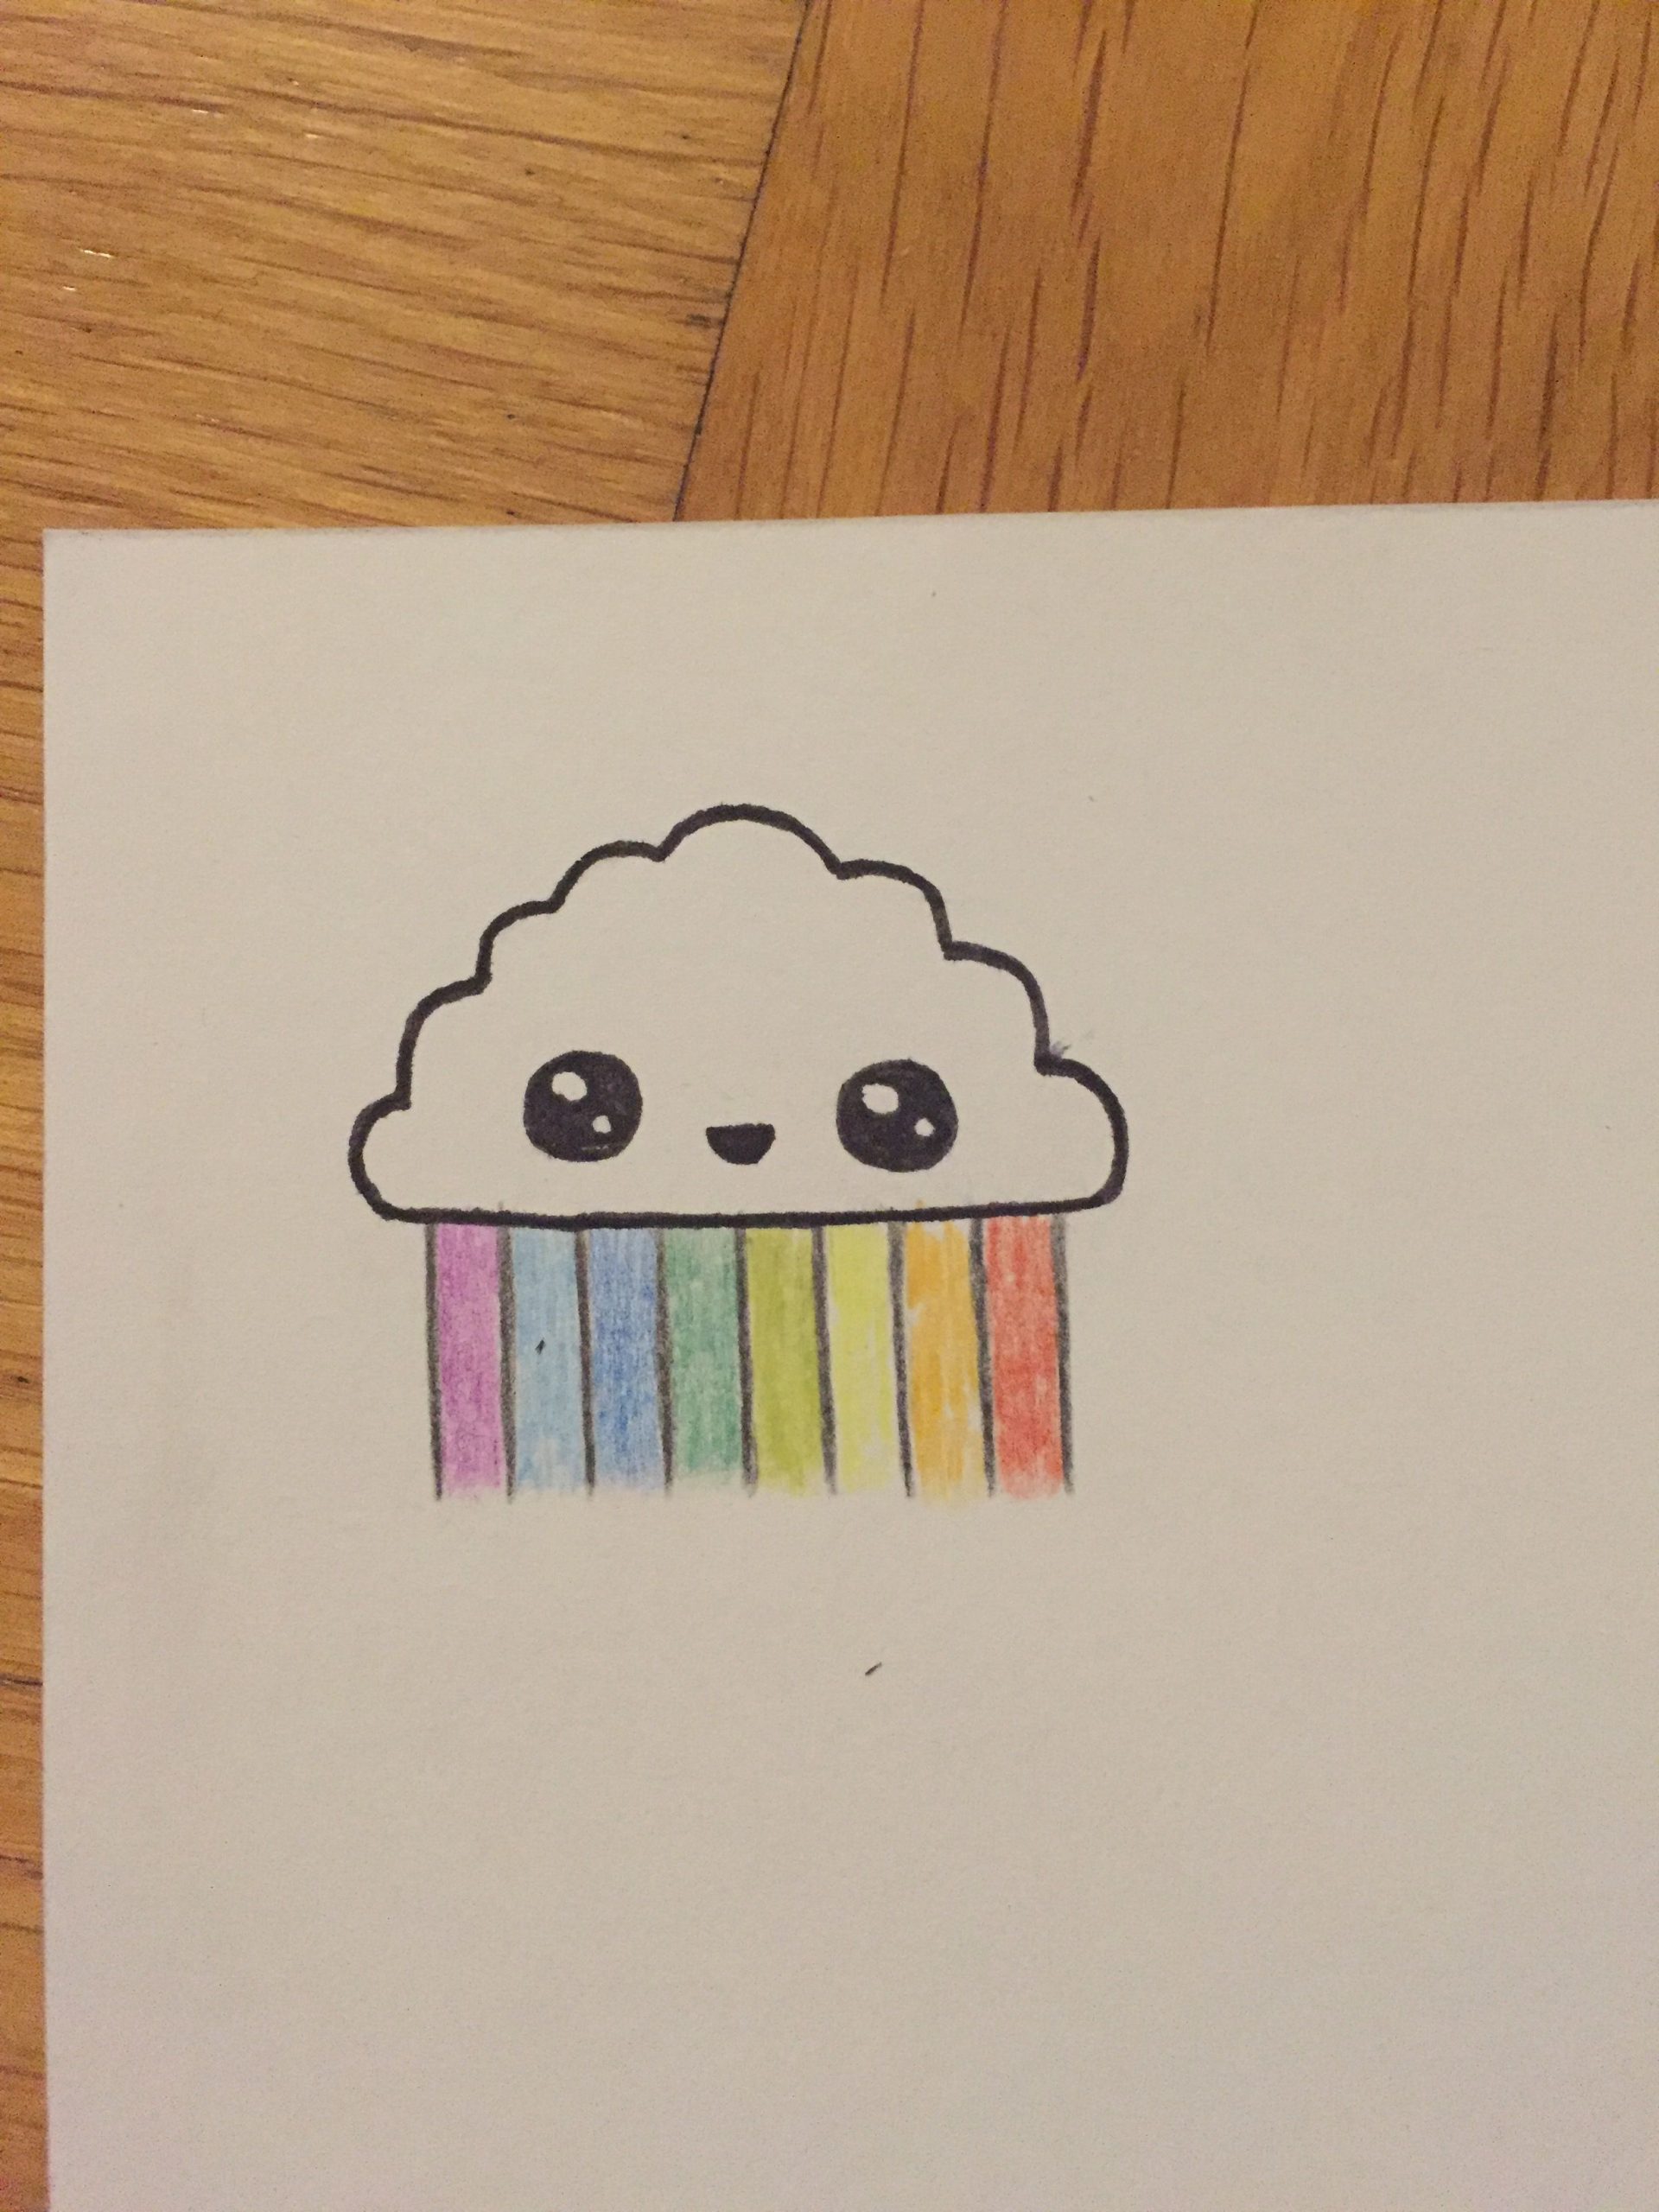 Rainbow Selber Zeichnen | Zeichnung Bleistift bei Leichte Sachen Zum Zeichnen